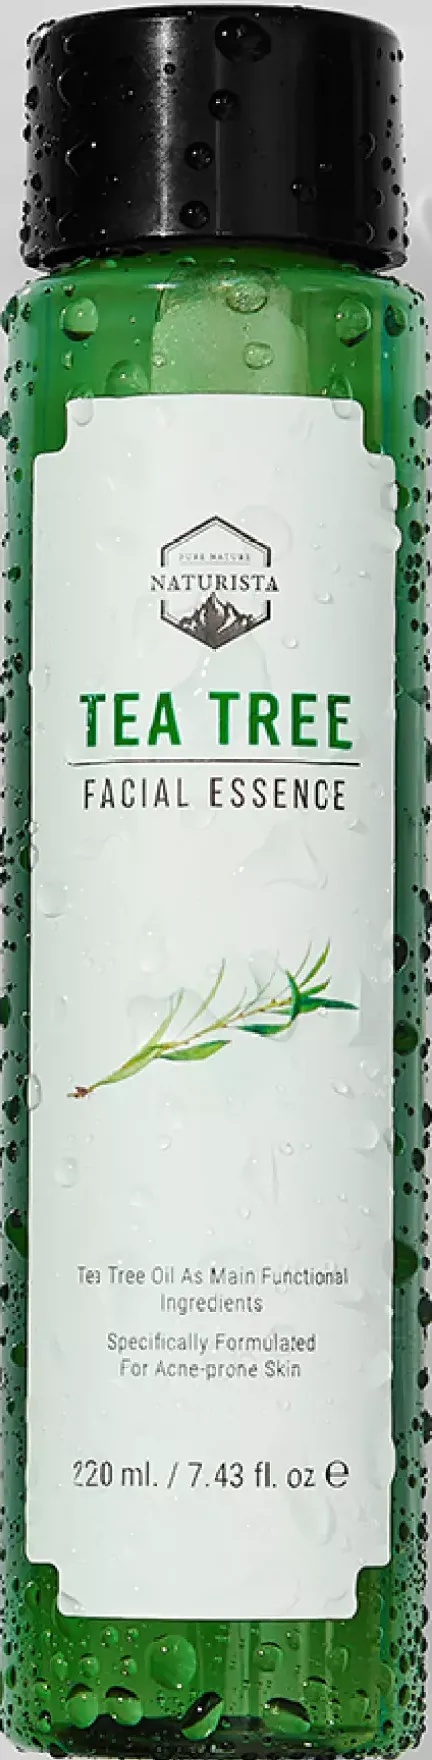 Naturista Tea Tree Facial Essence